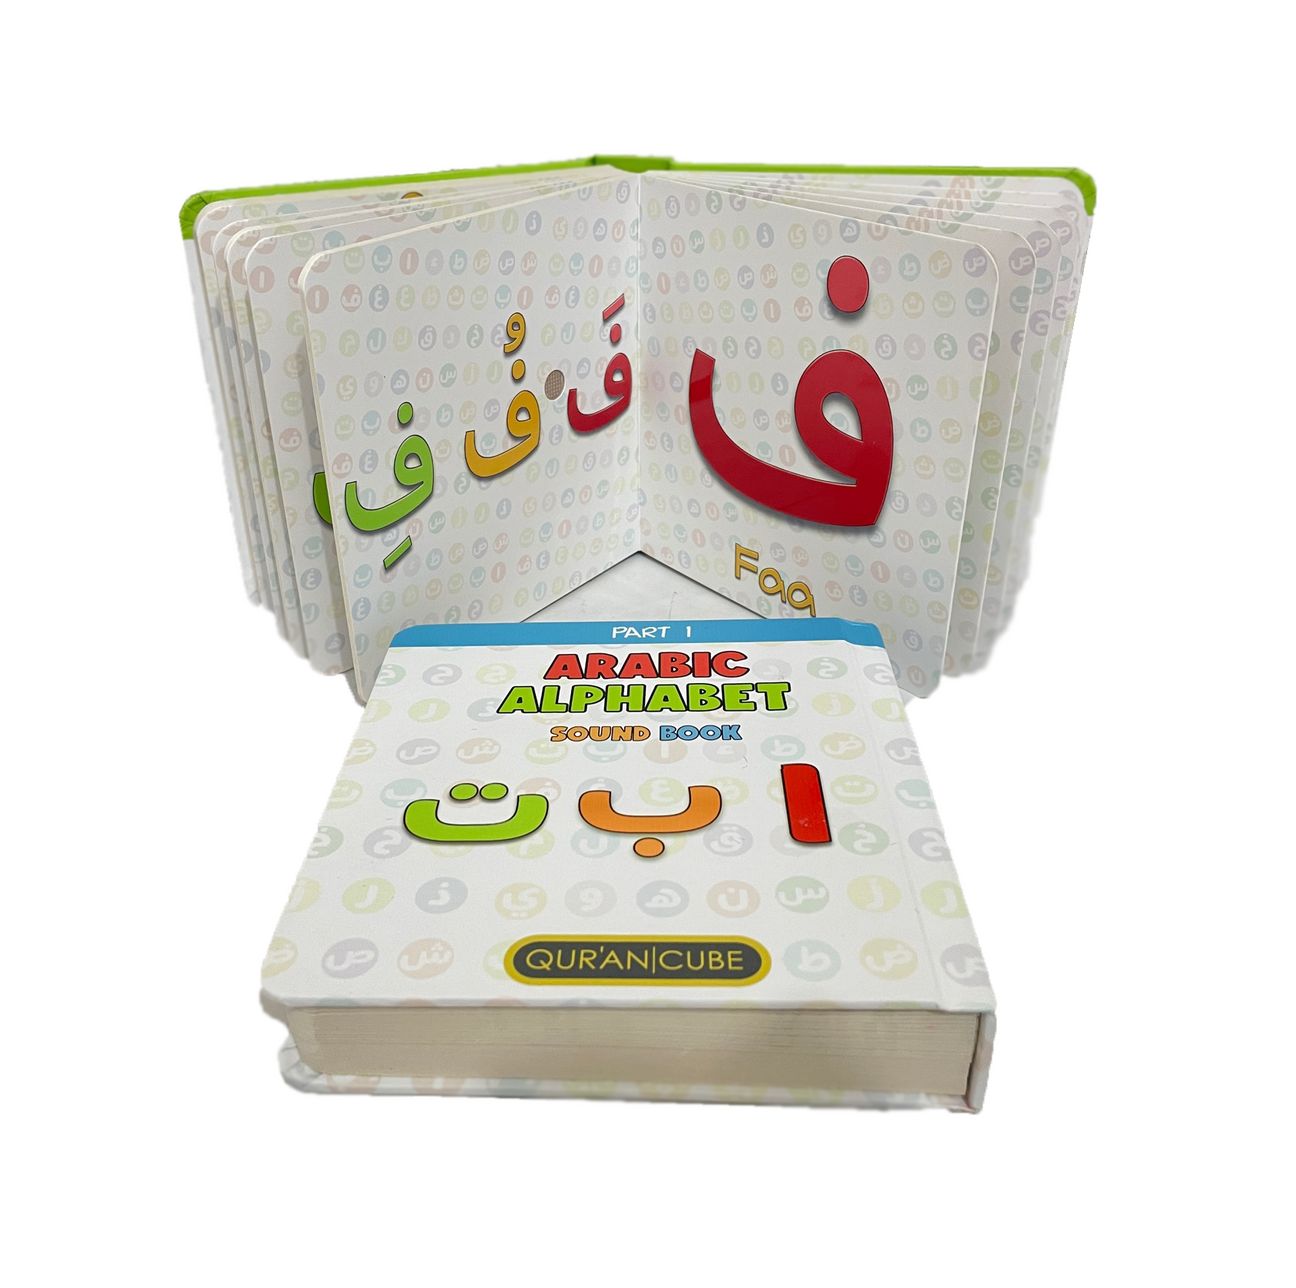 Arabic Alphabet Sound Books - Alif Baa Taa - 2 Parts